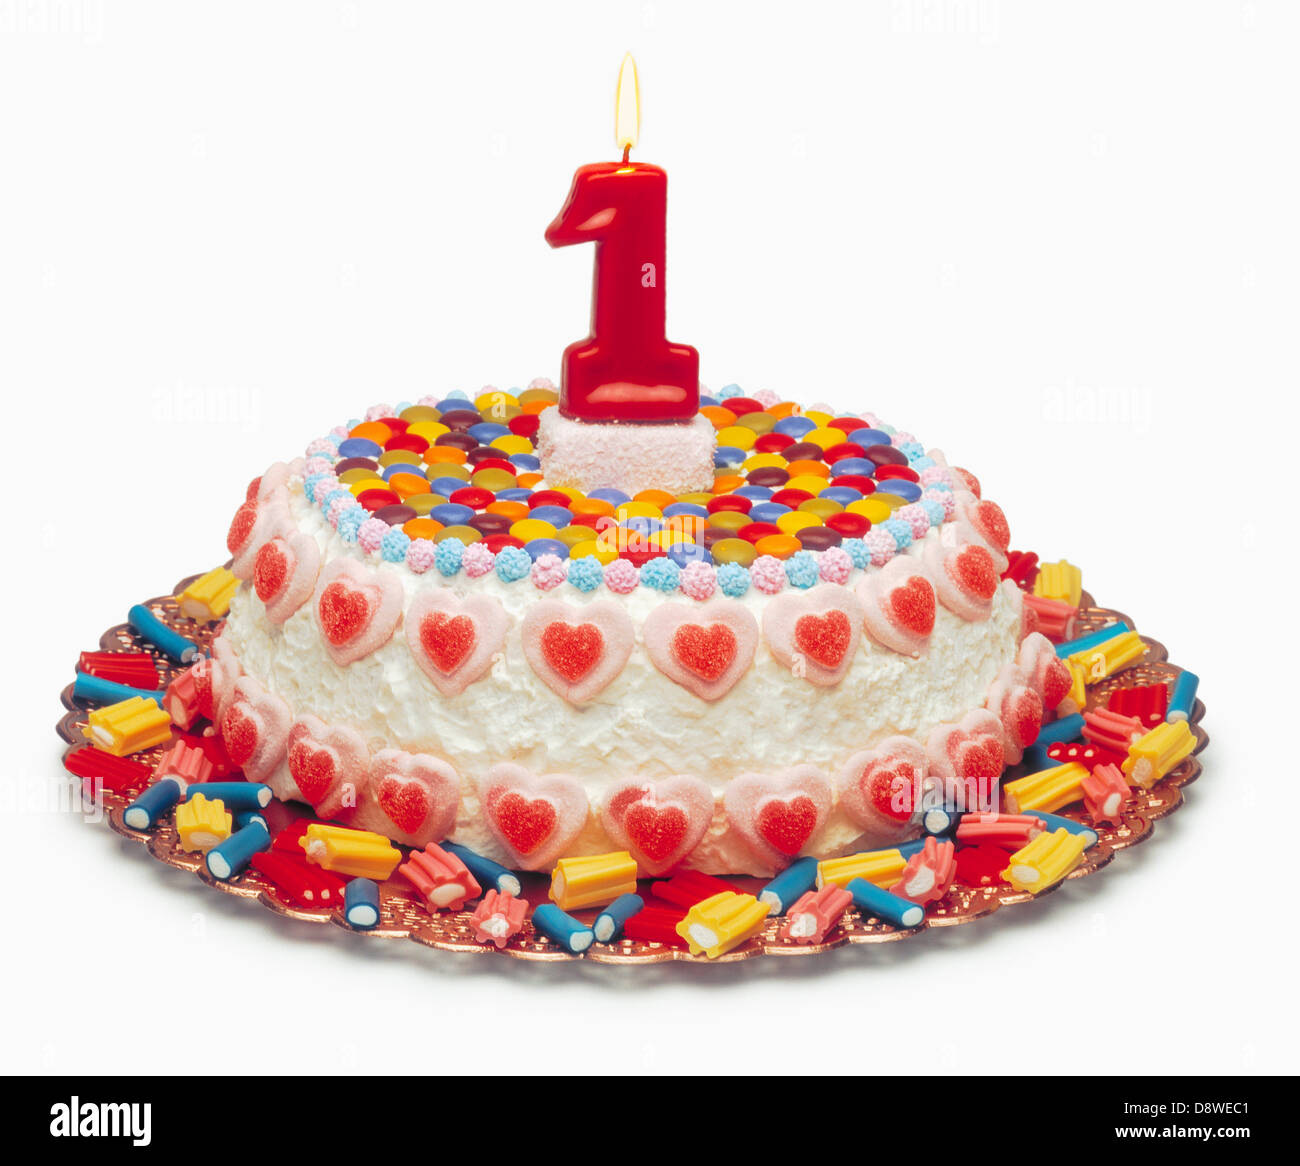 Pastel de cumpleaños para 1 año el pastel está decorado con una